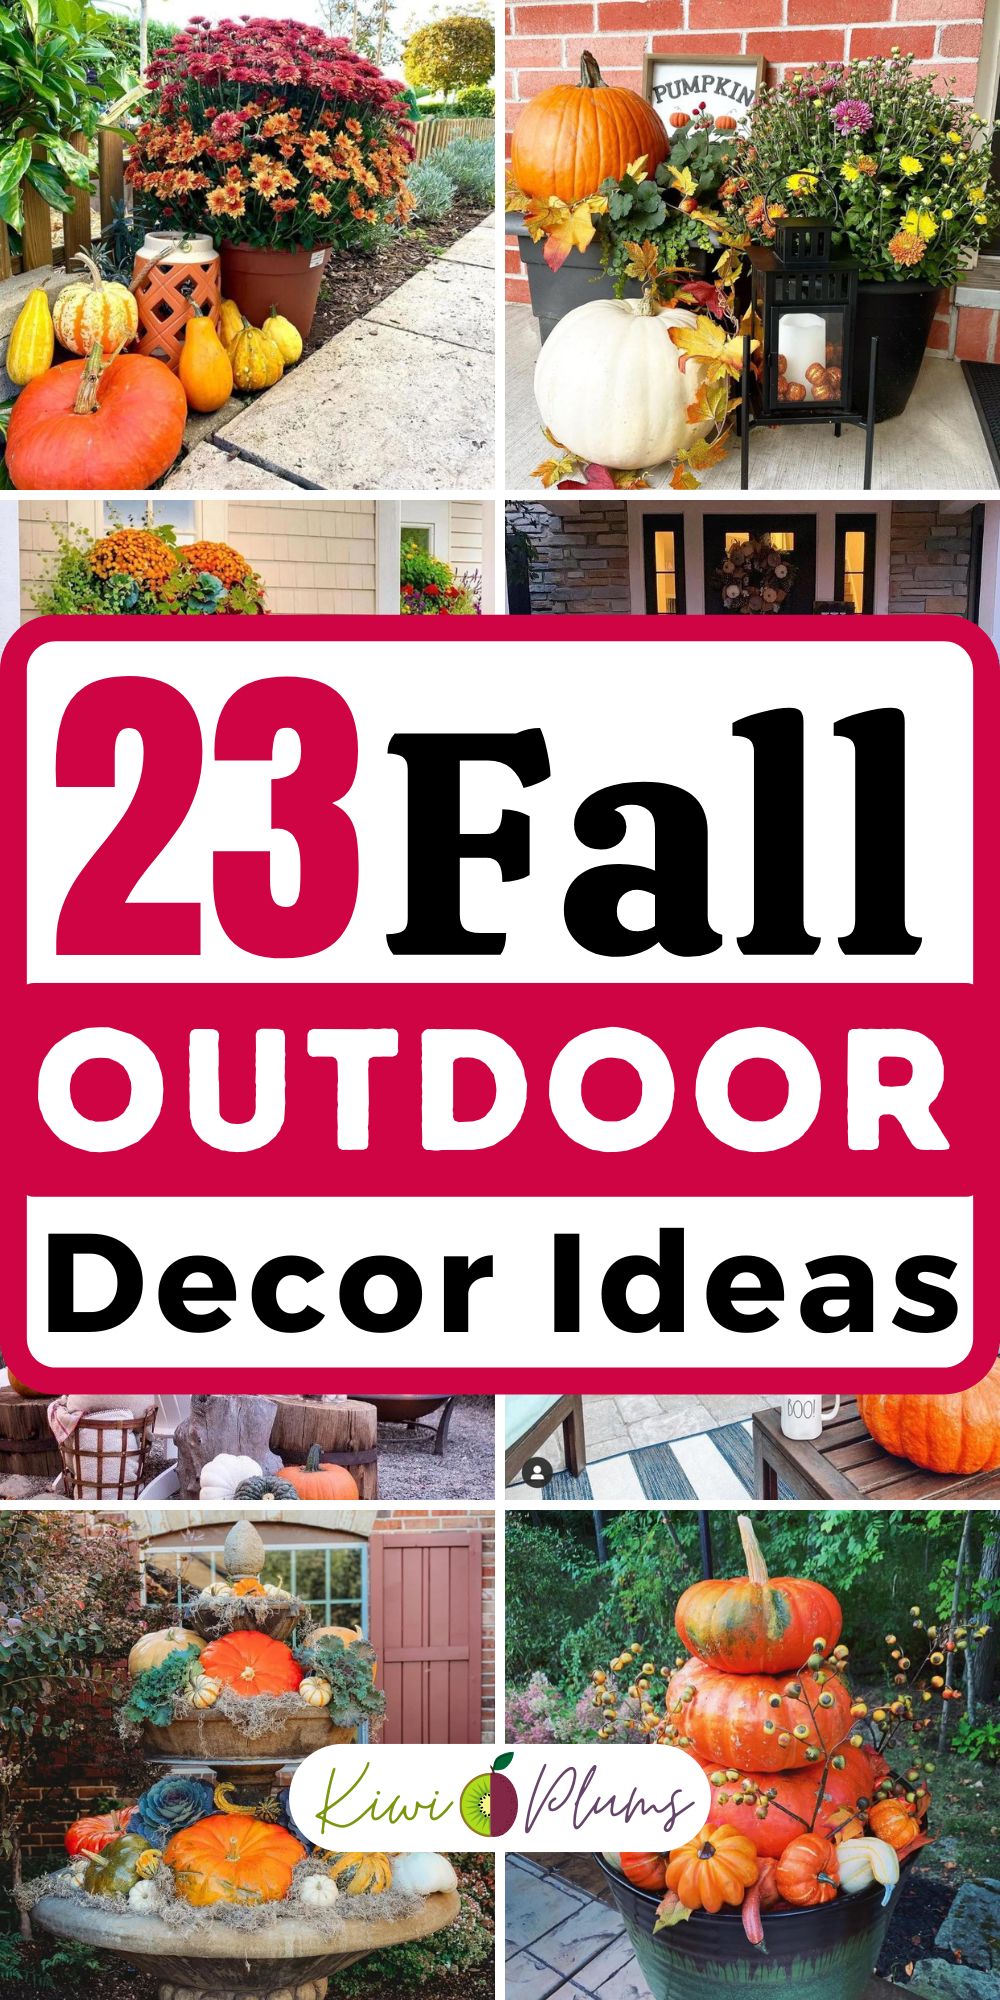 23 Best Fall Outdoor Decor Ideas